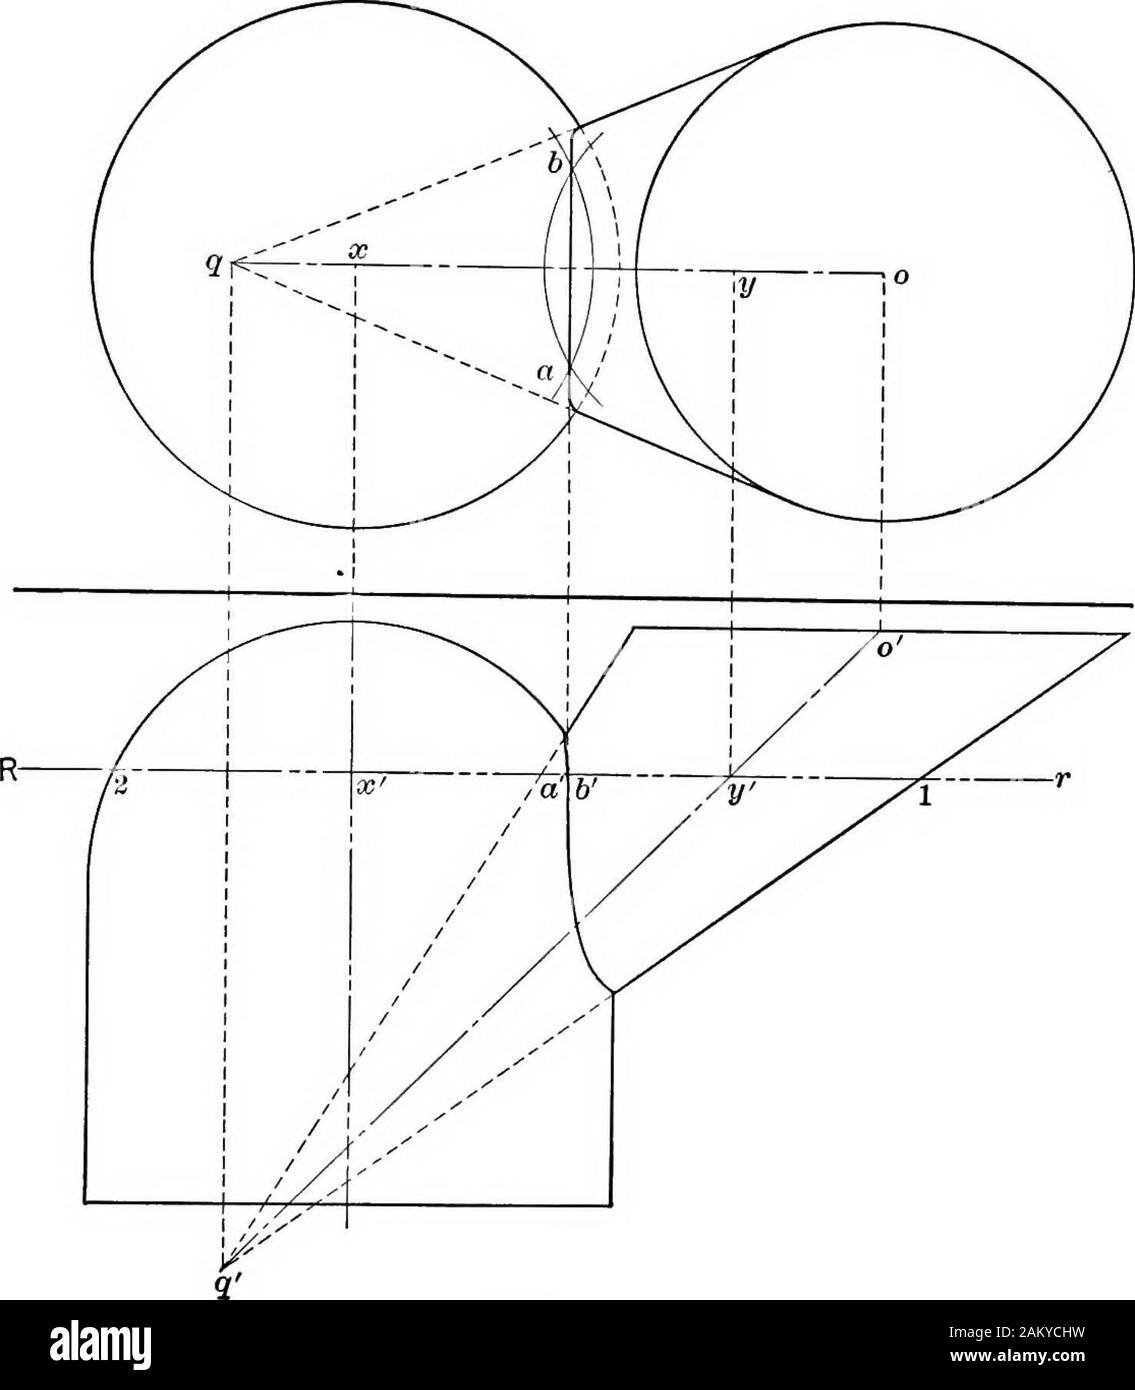 Gli elementi essenziali della geometria descrittiva . Fig. 116. due  elementi dal cilindro. Questi si intersecano in corrispondenza di E e  B,ulteriori due punti sulla curva. Piano ausiliario T individua pointsD e